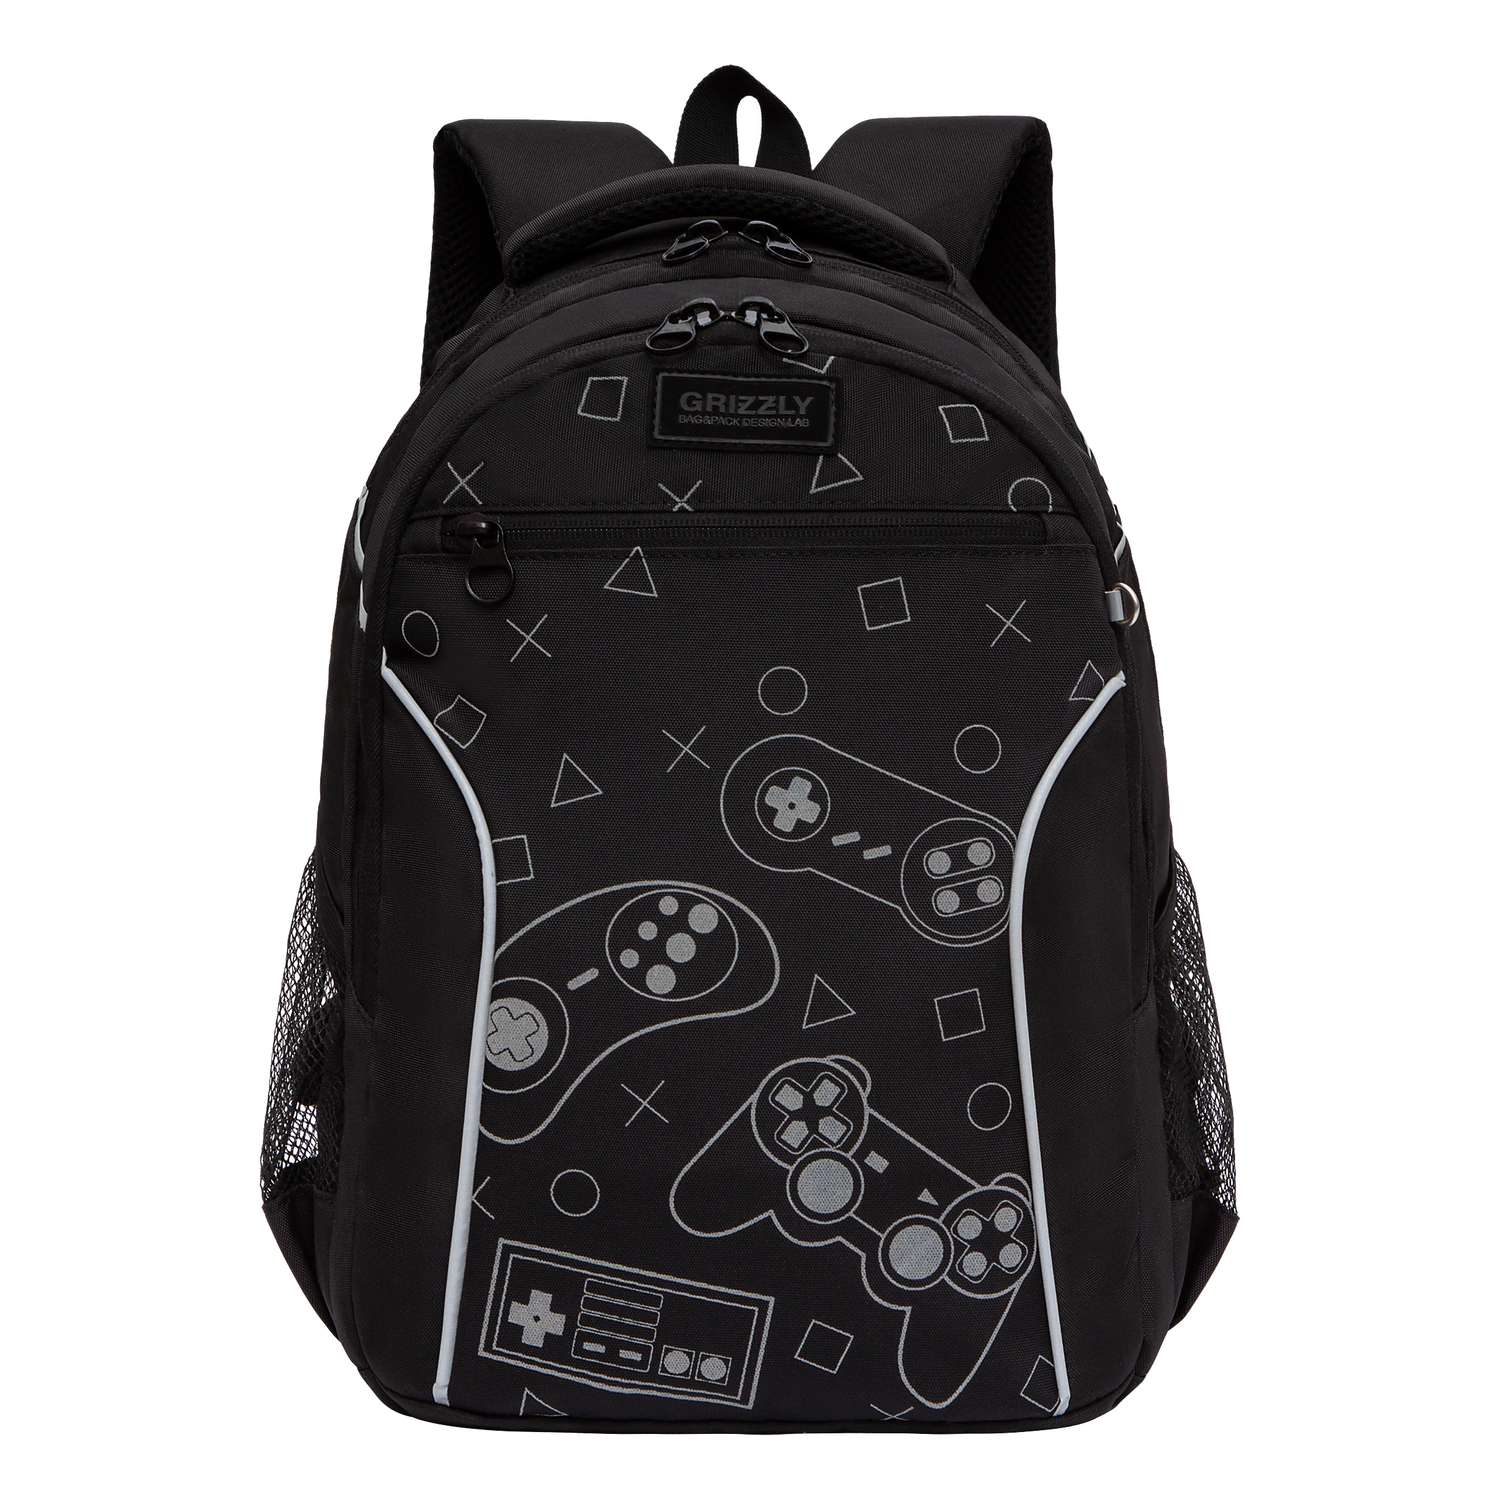 Рюкзак школьный Grizzly Черный RB-259-2/1 - фото 2